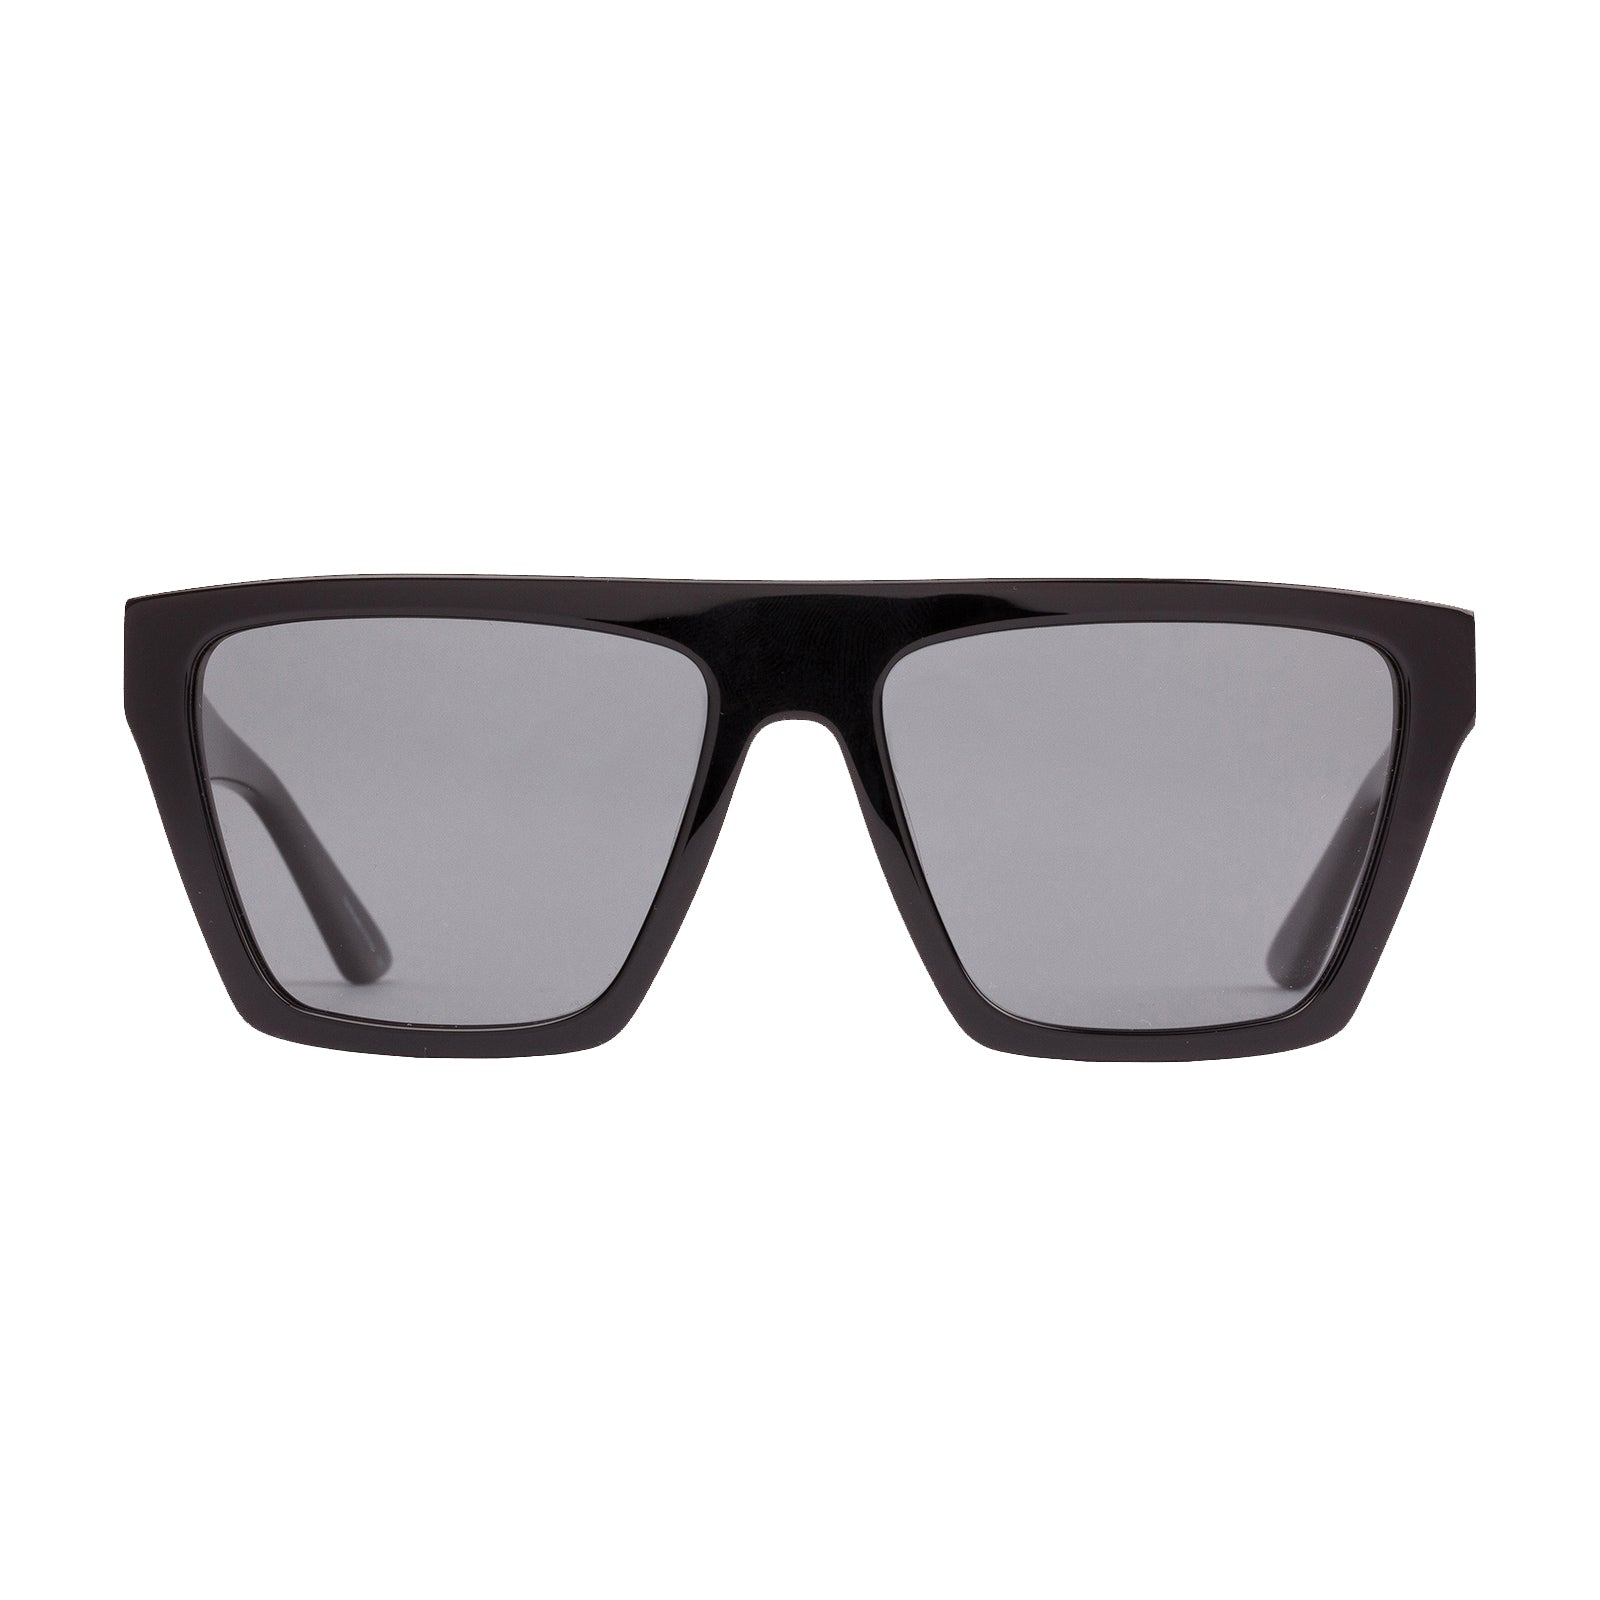 Sito Bender Polarized Sunglasses Black IronGrey